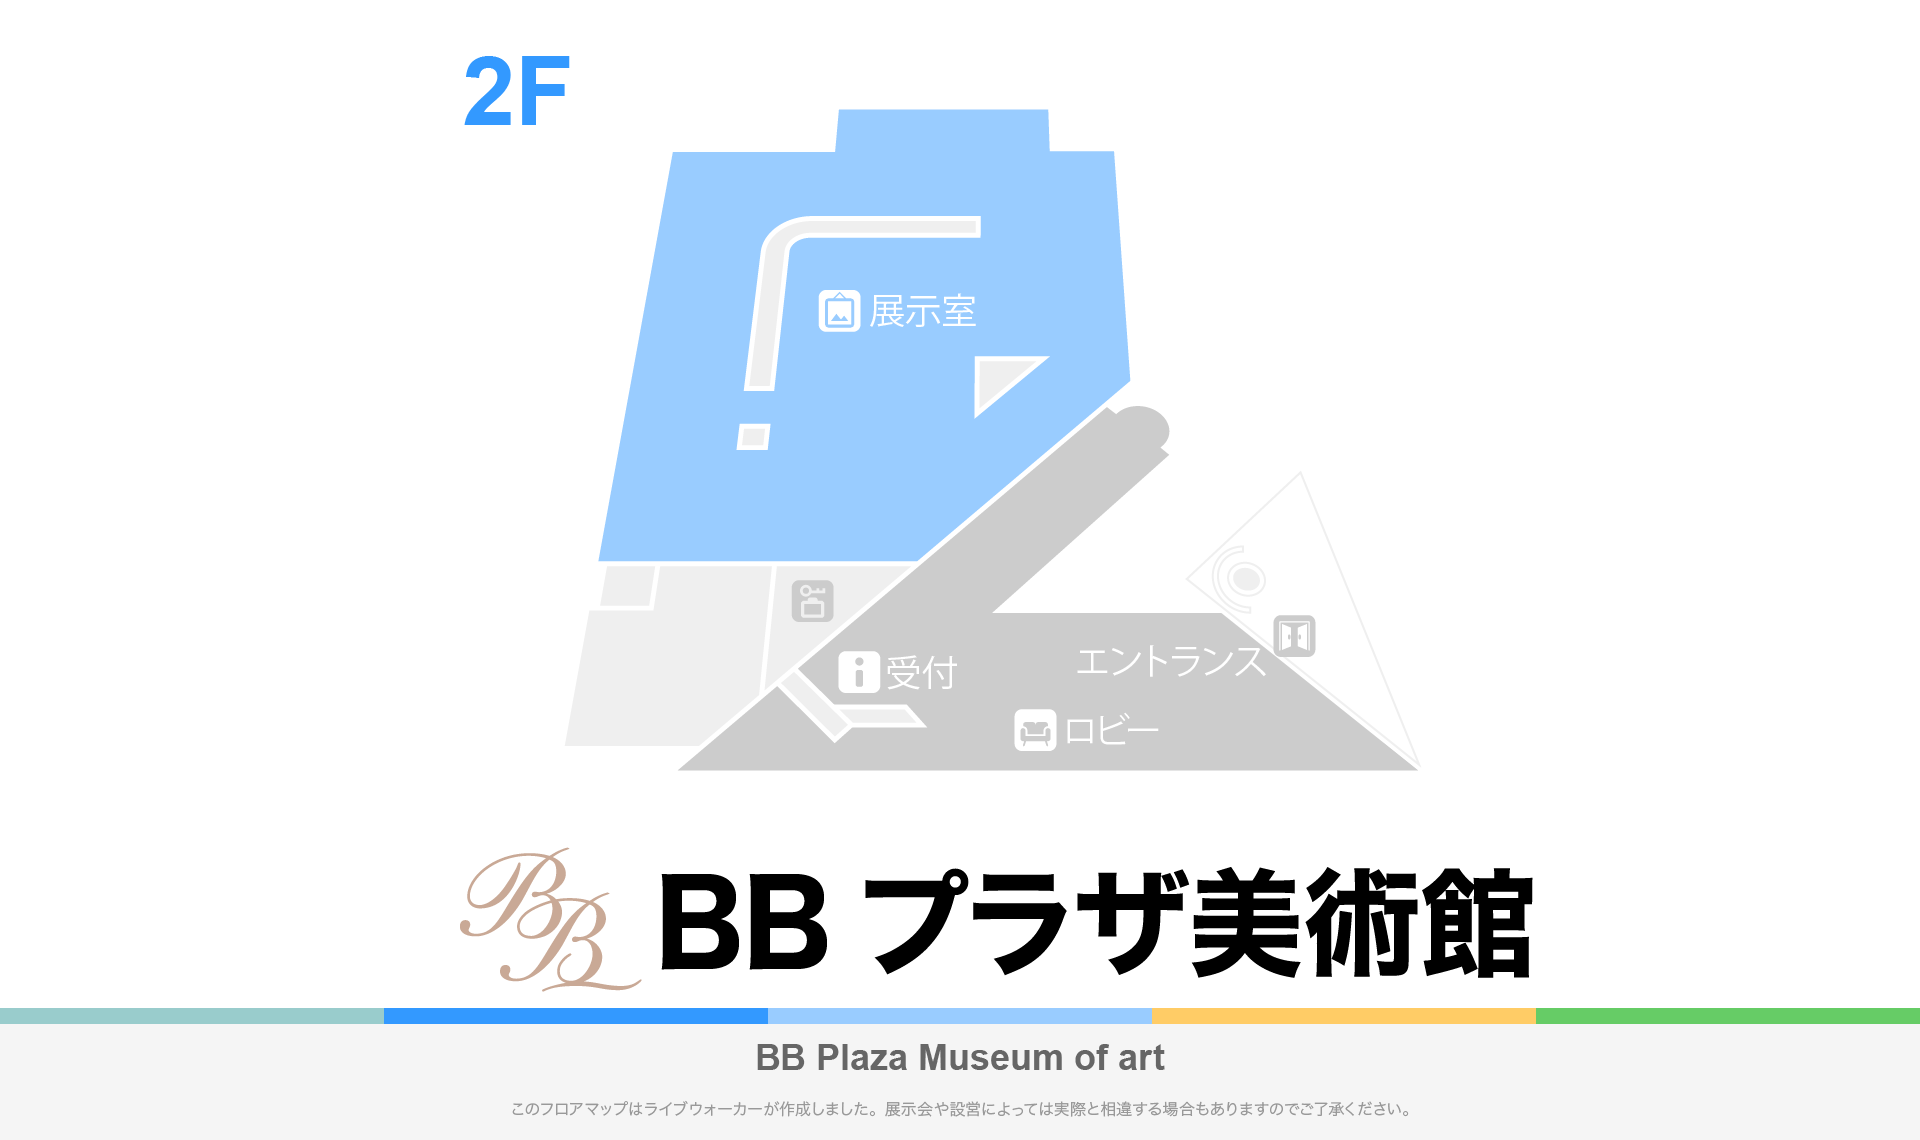 BBプラザ美術館のフロアマップ